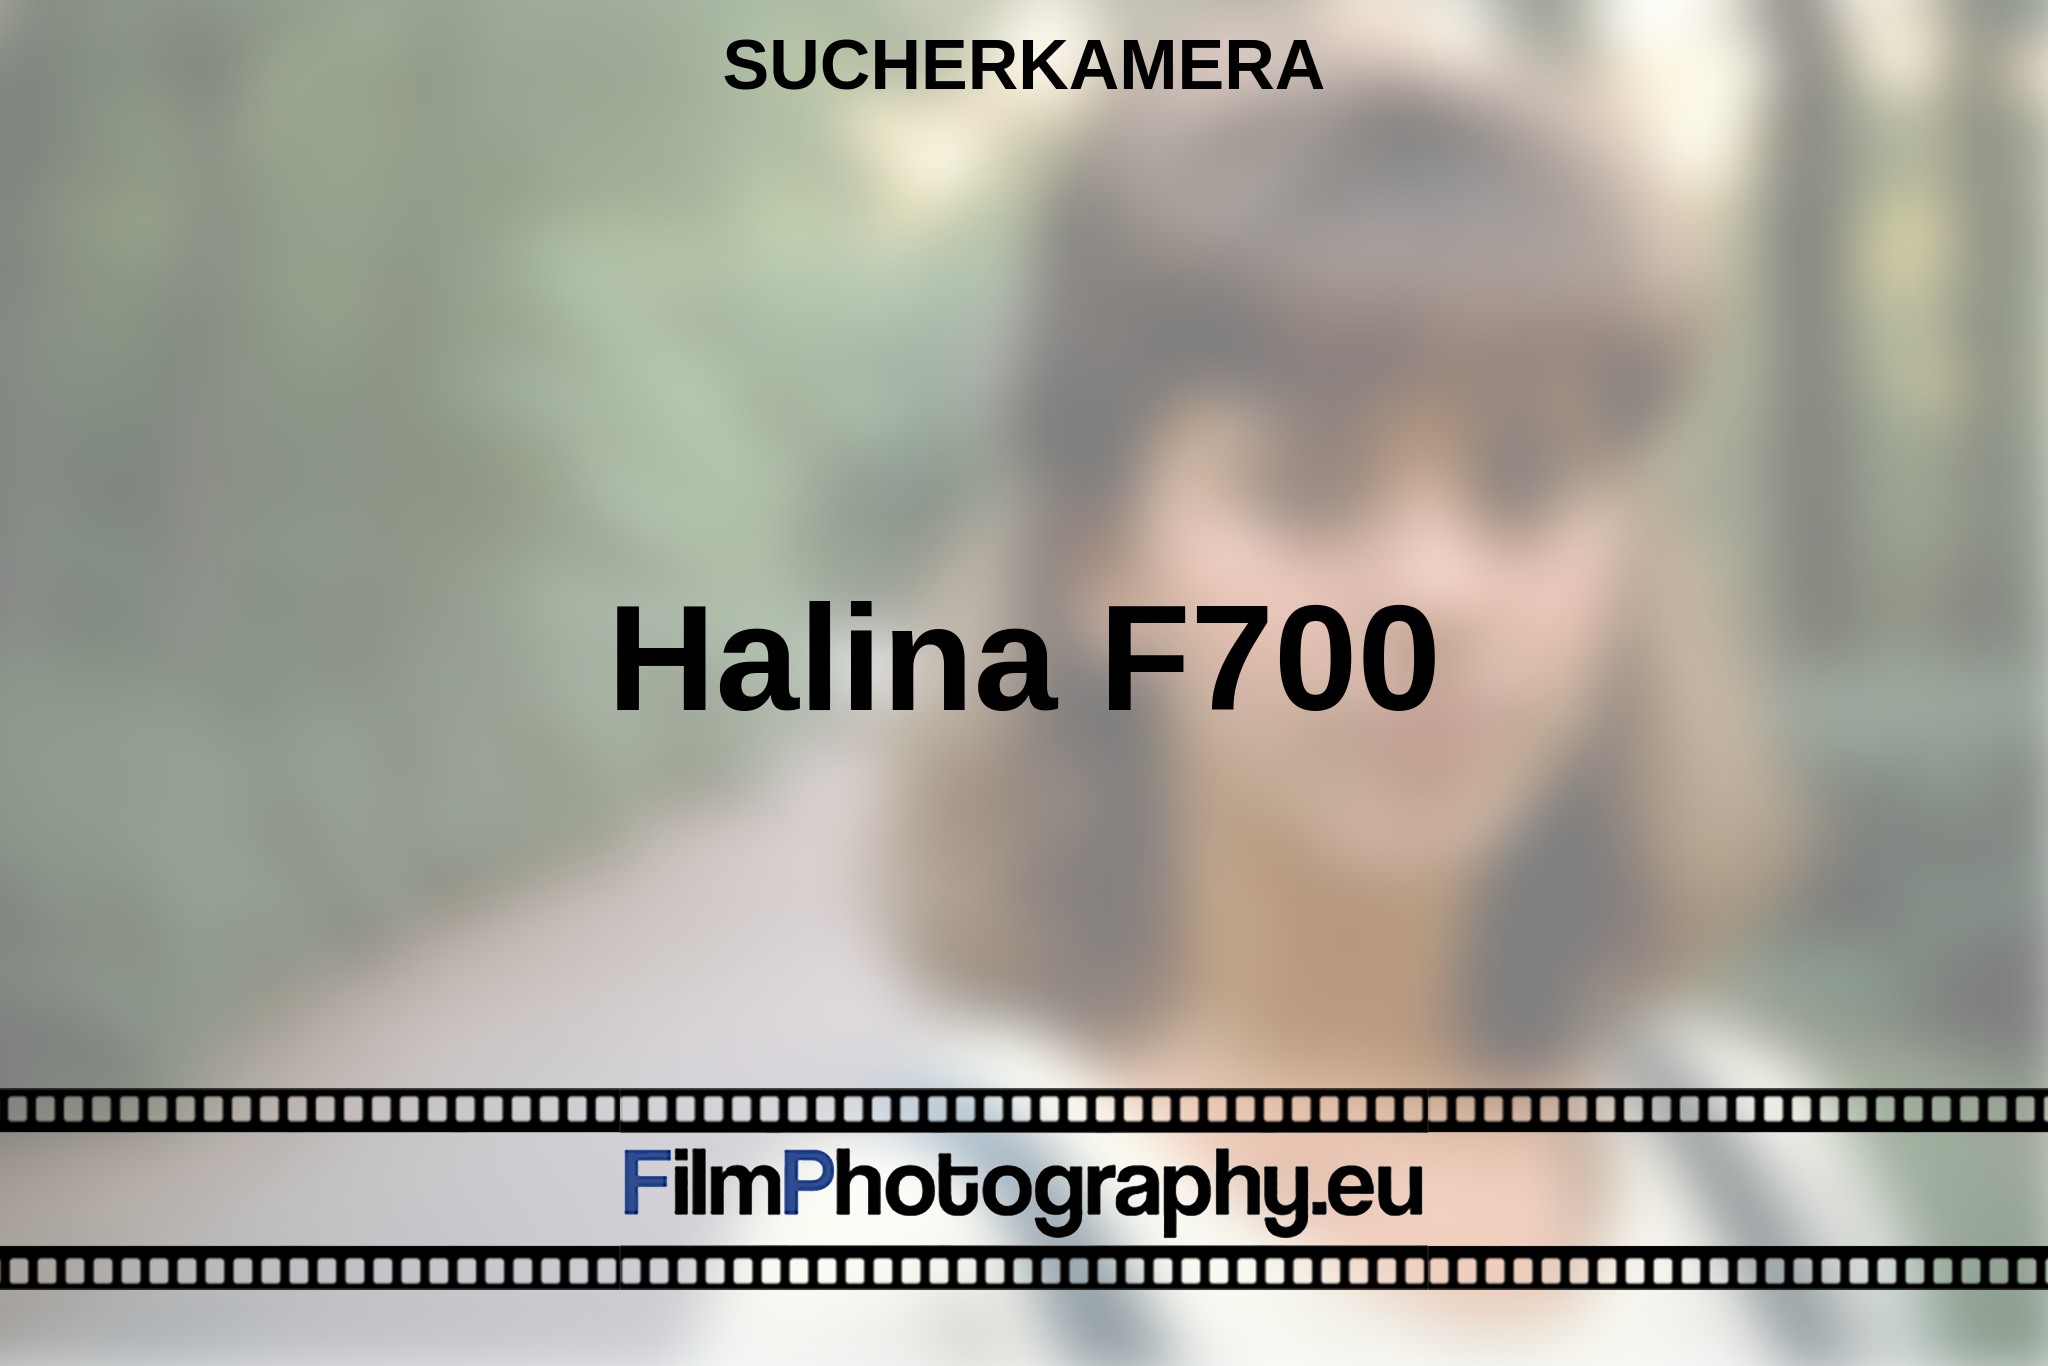 halina-f700-sucherkamera-bnv.jpg